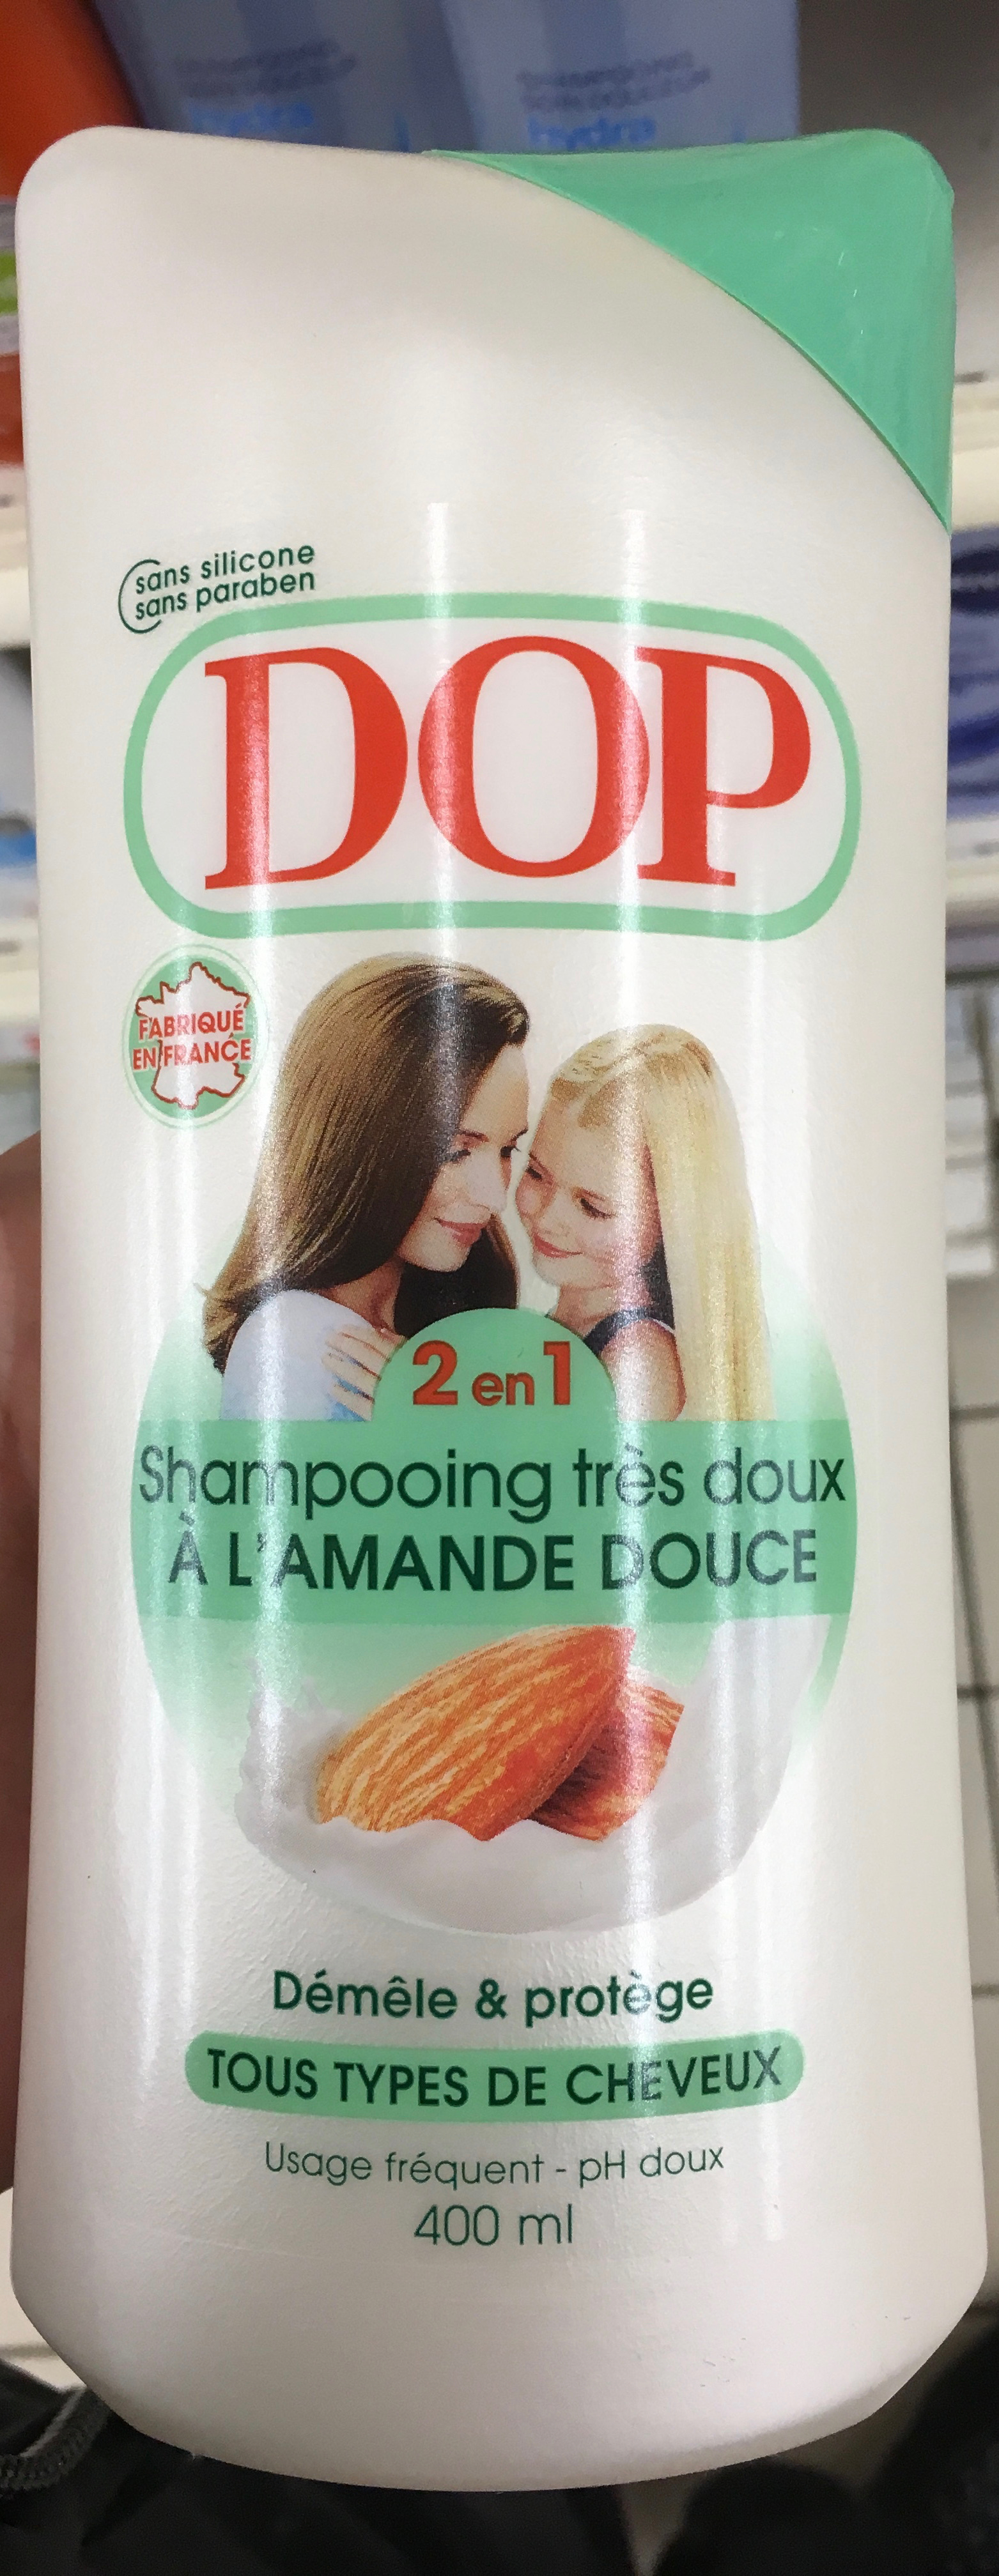 Shampooing très doux 2 en 1 à l'amande douce - Produto - fr